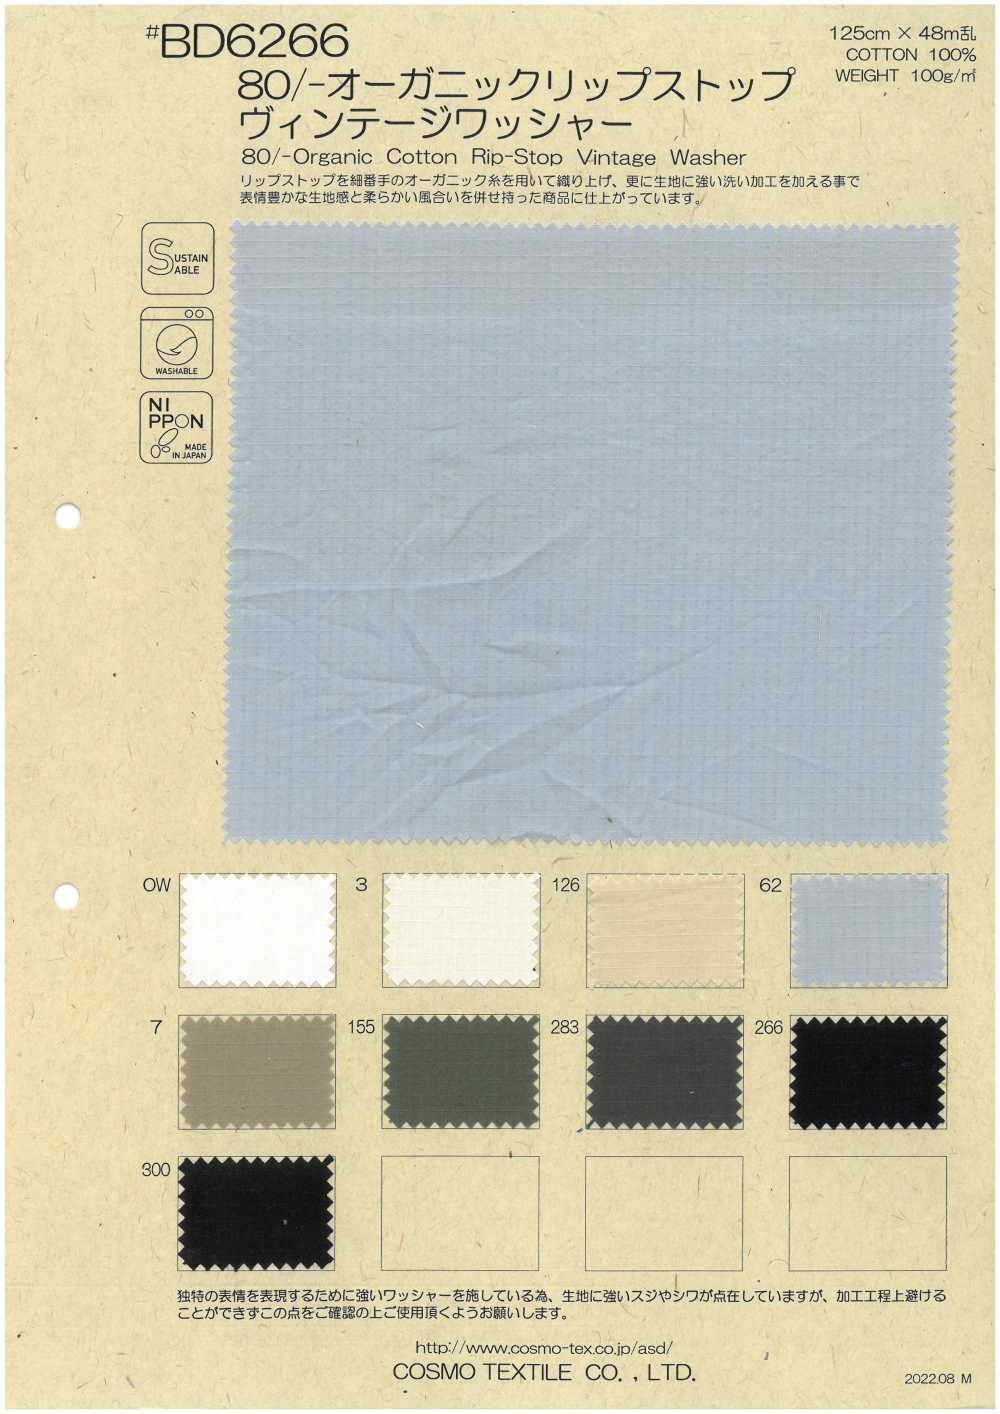 BD6266 80/- Bio-Baumwoll-Ripstop Mit Vintage-Unterlegscheiben[Textilgewebe] COSMO TEXTILE